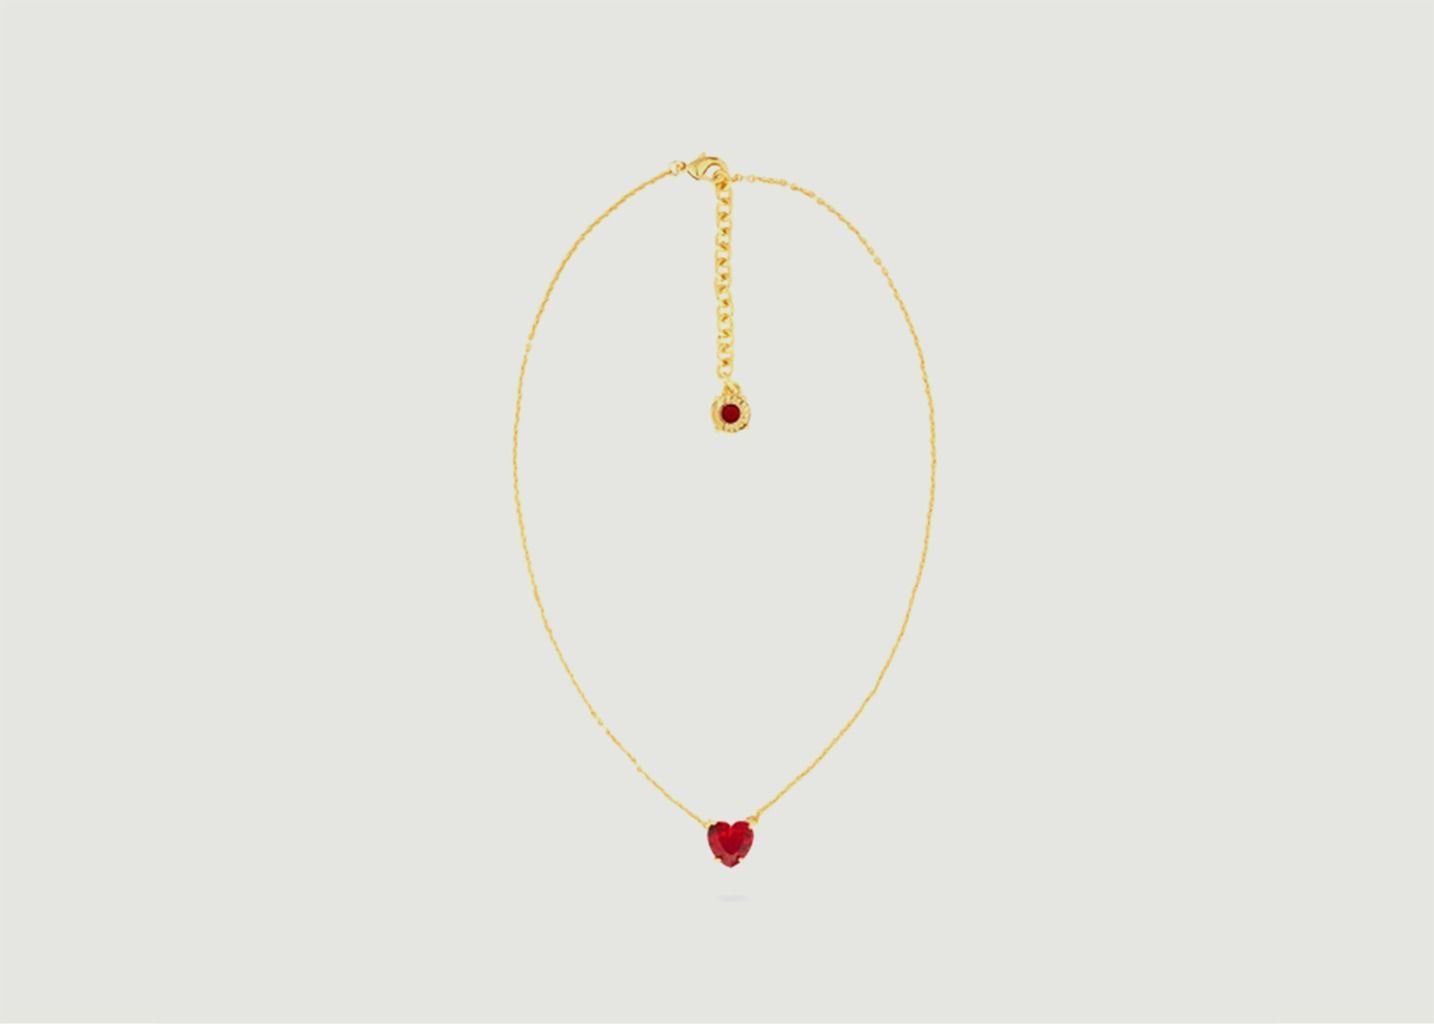 Fine necklace with heart pendant La Diamantine - Les Néréides